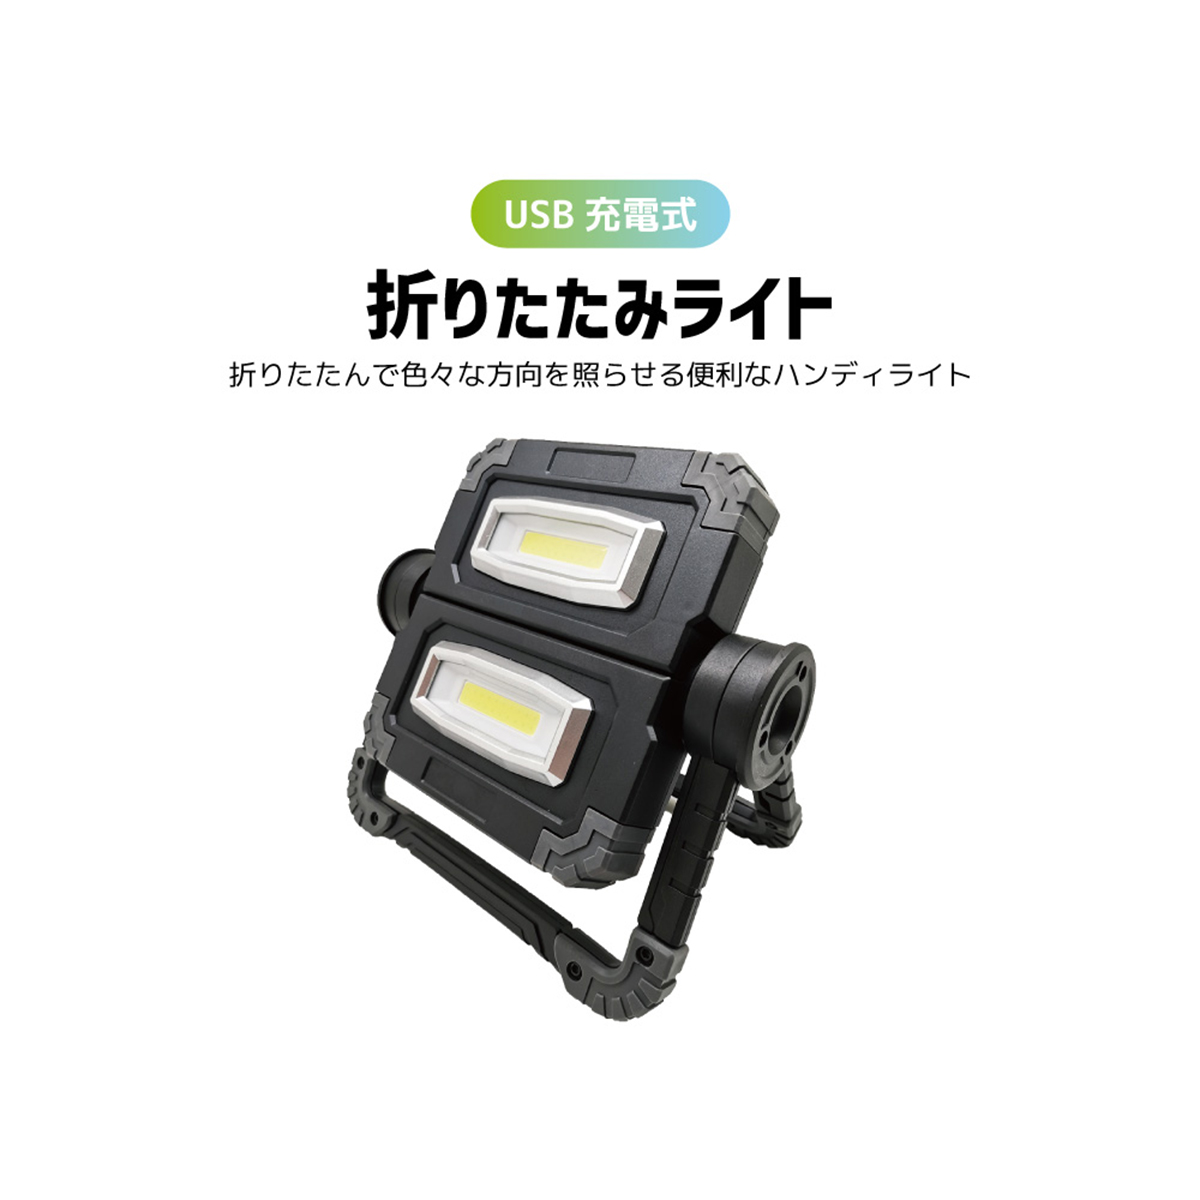 ワークライト 作業灯 LED USB 充電式 ハンディライト 防災